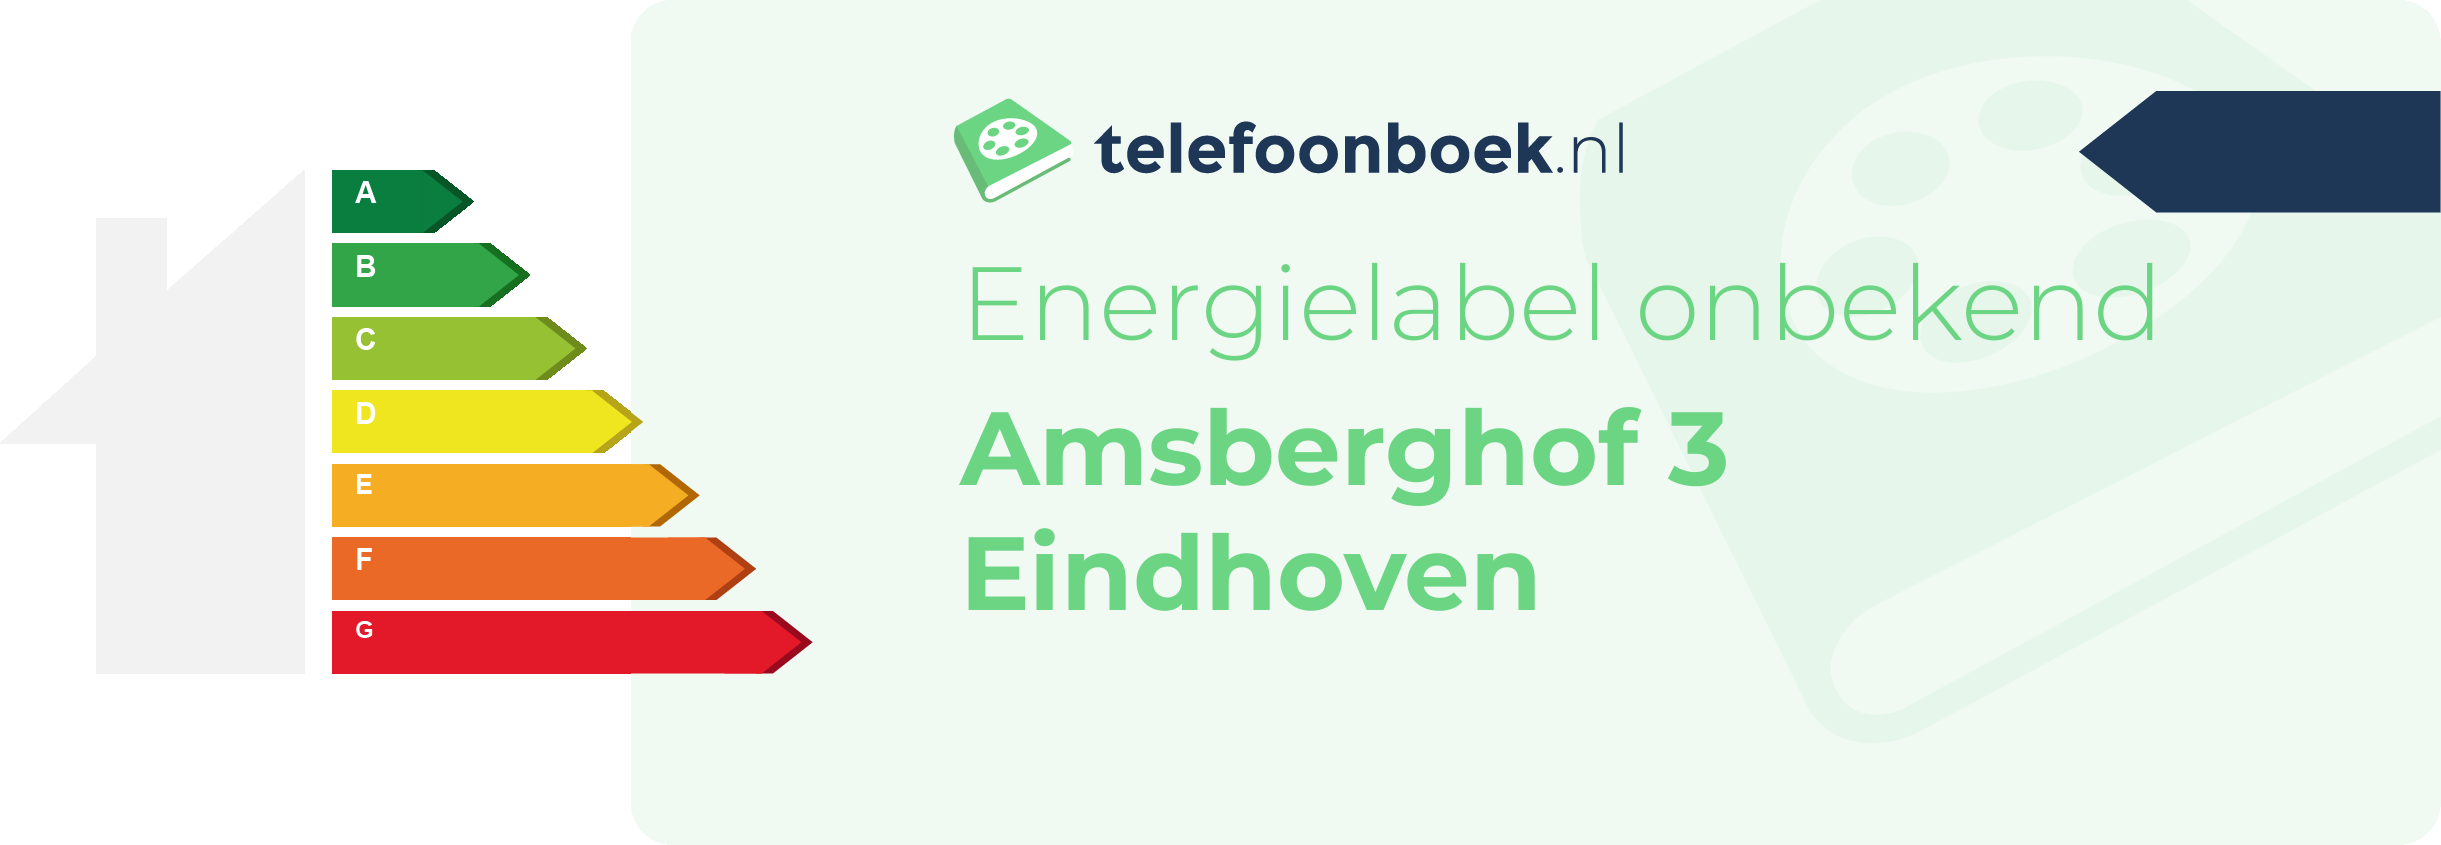 Energielabel Amsberghof 3 Eindhoven